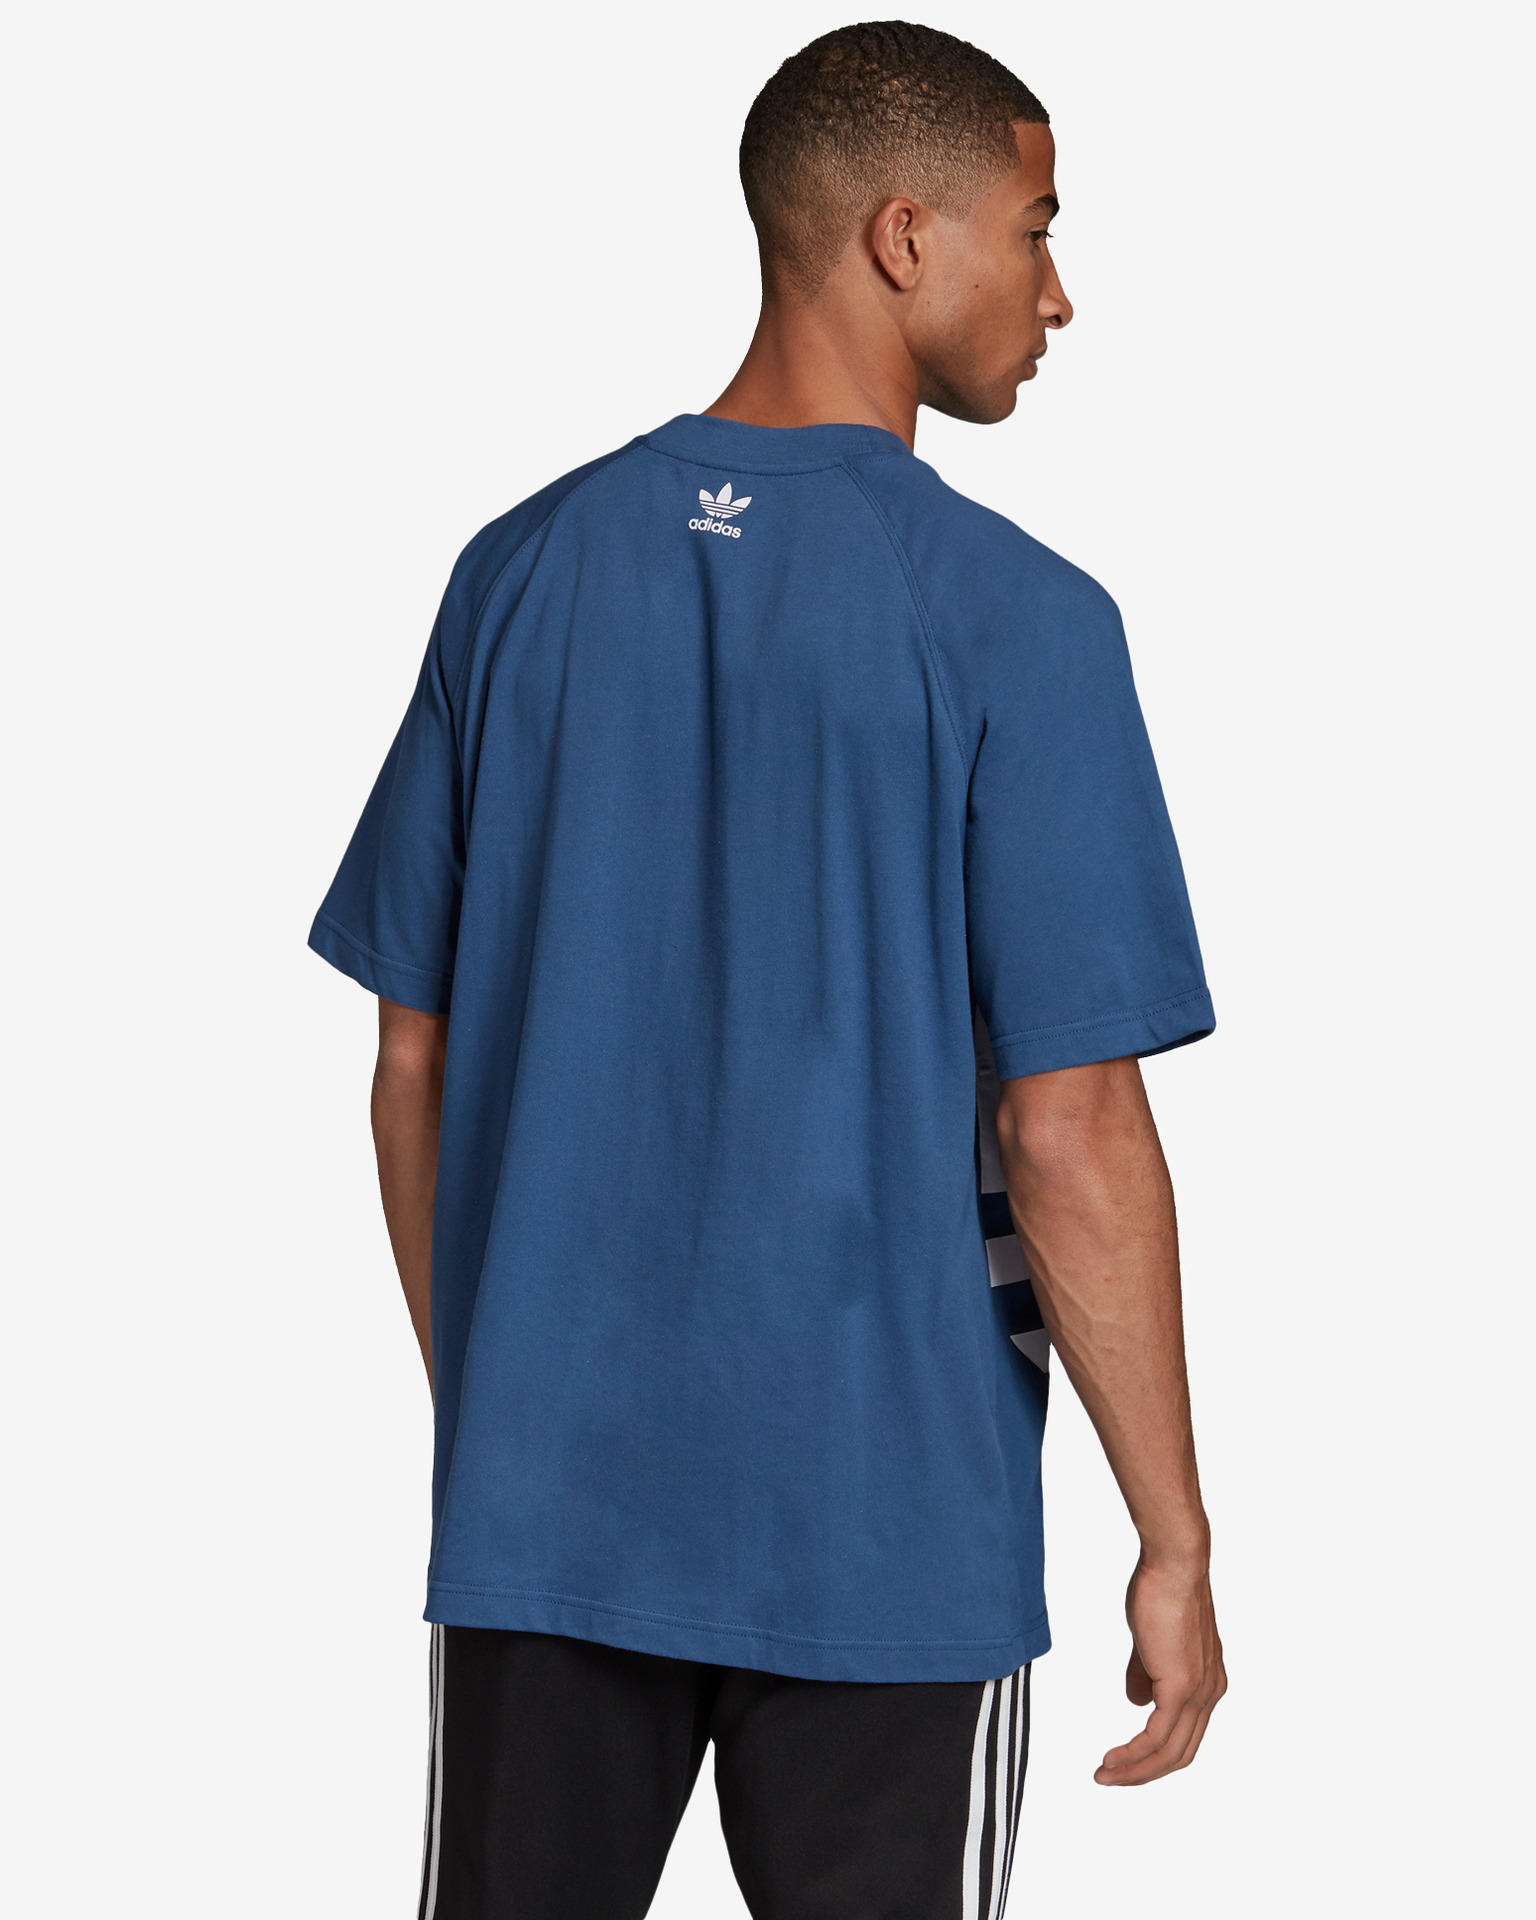 Adidas Bl T-Shirt T Shirt